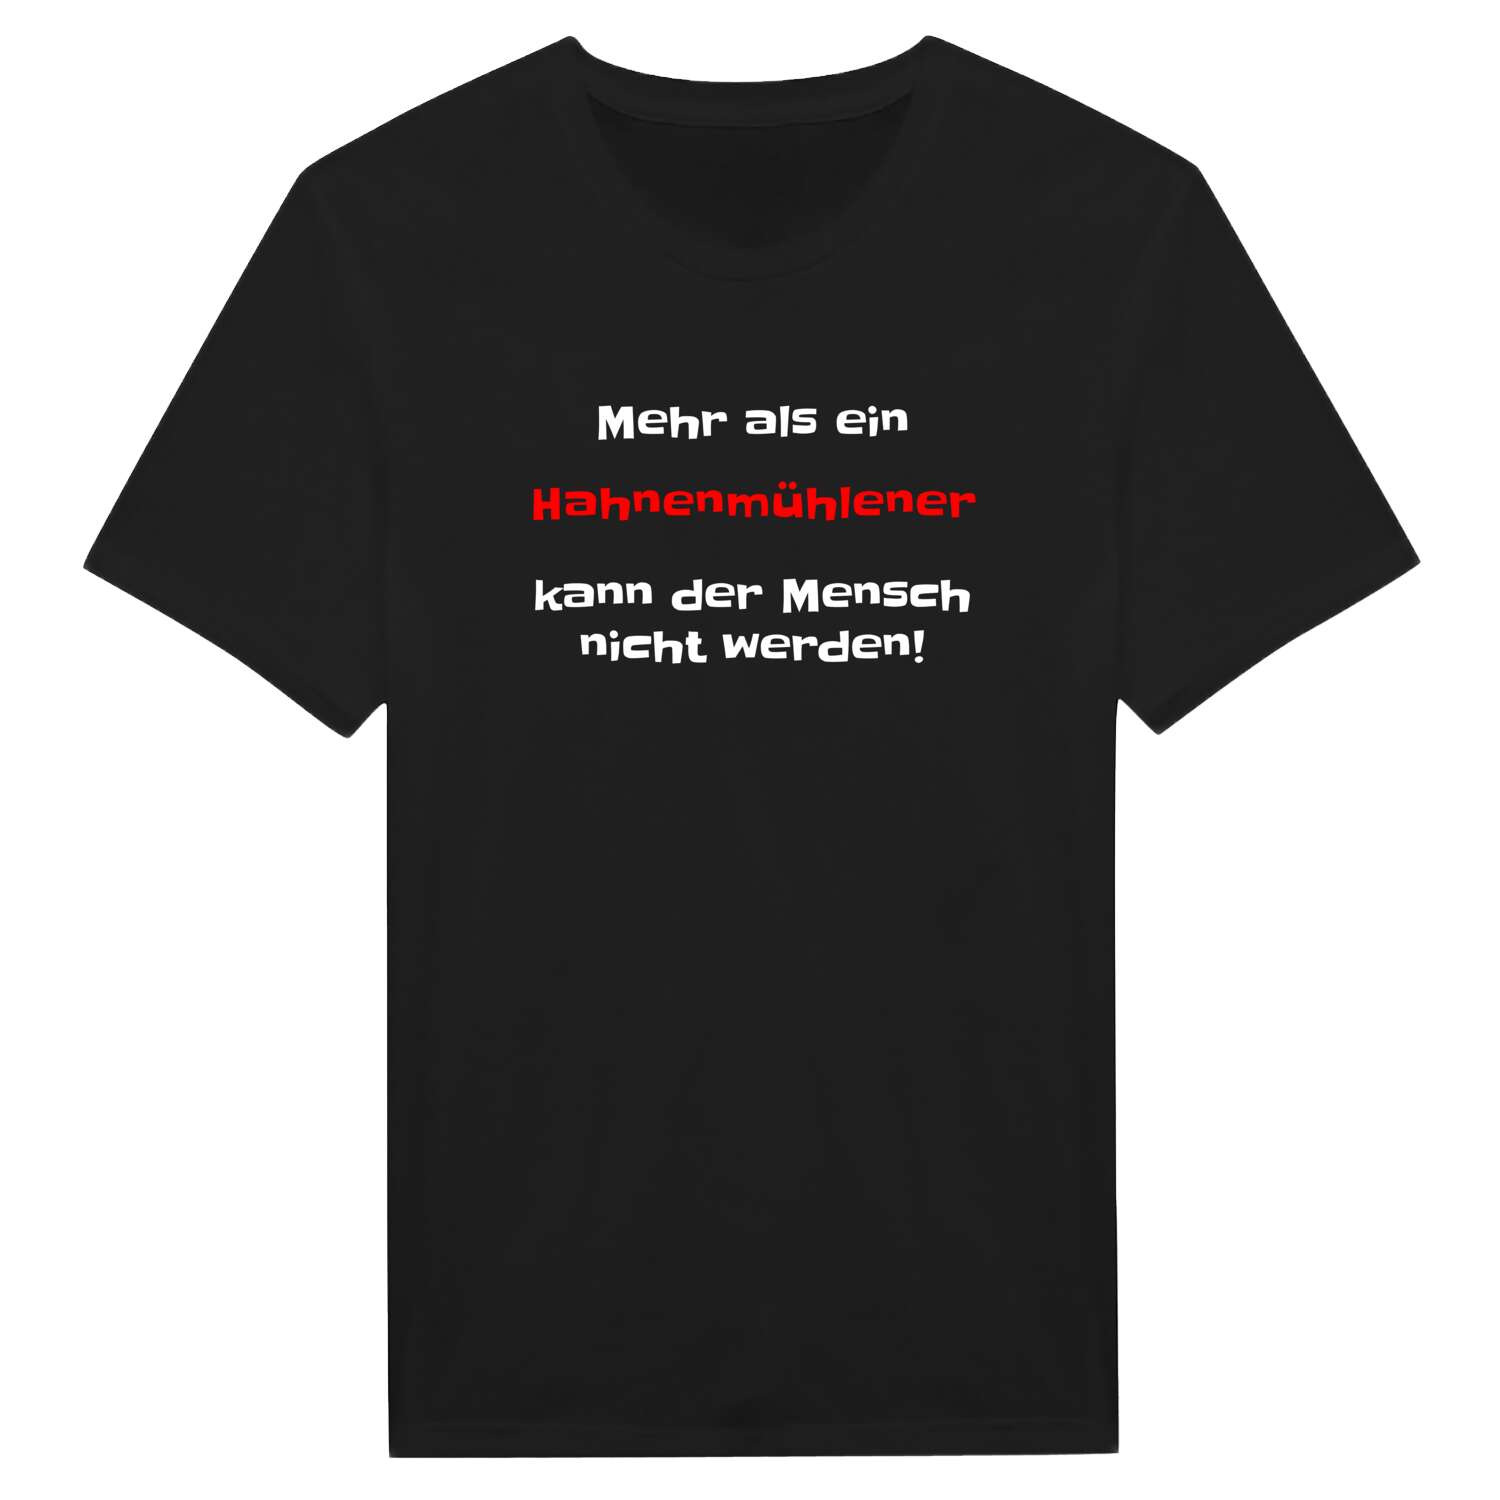 Hahnenmühle T-Shirt »Mehr als ein«